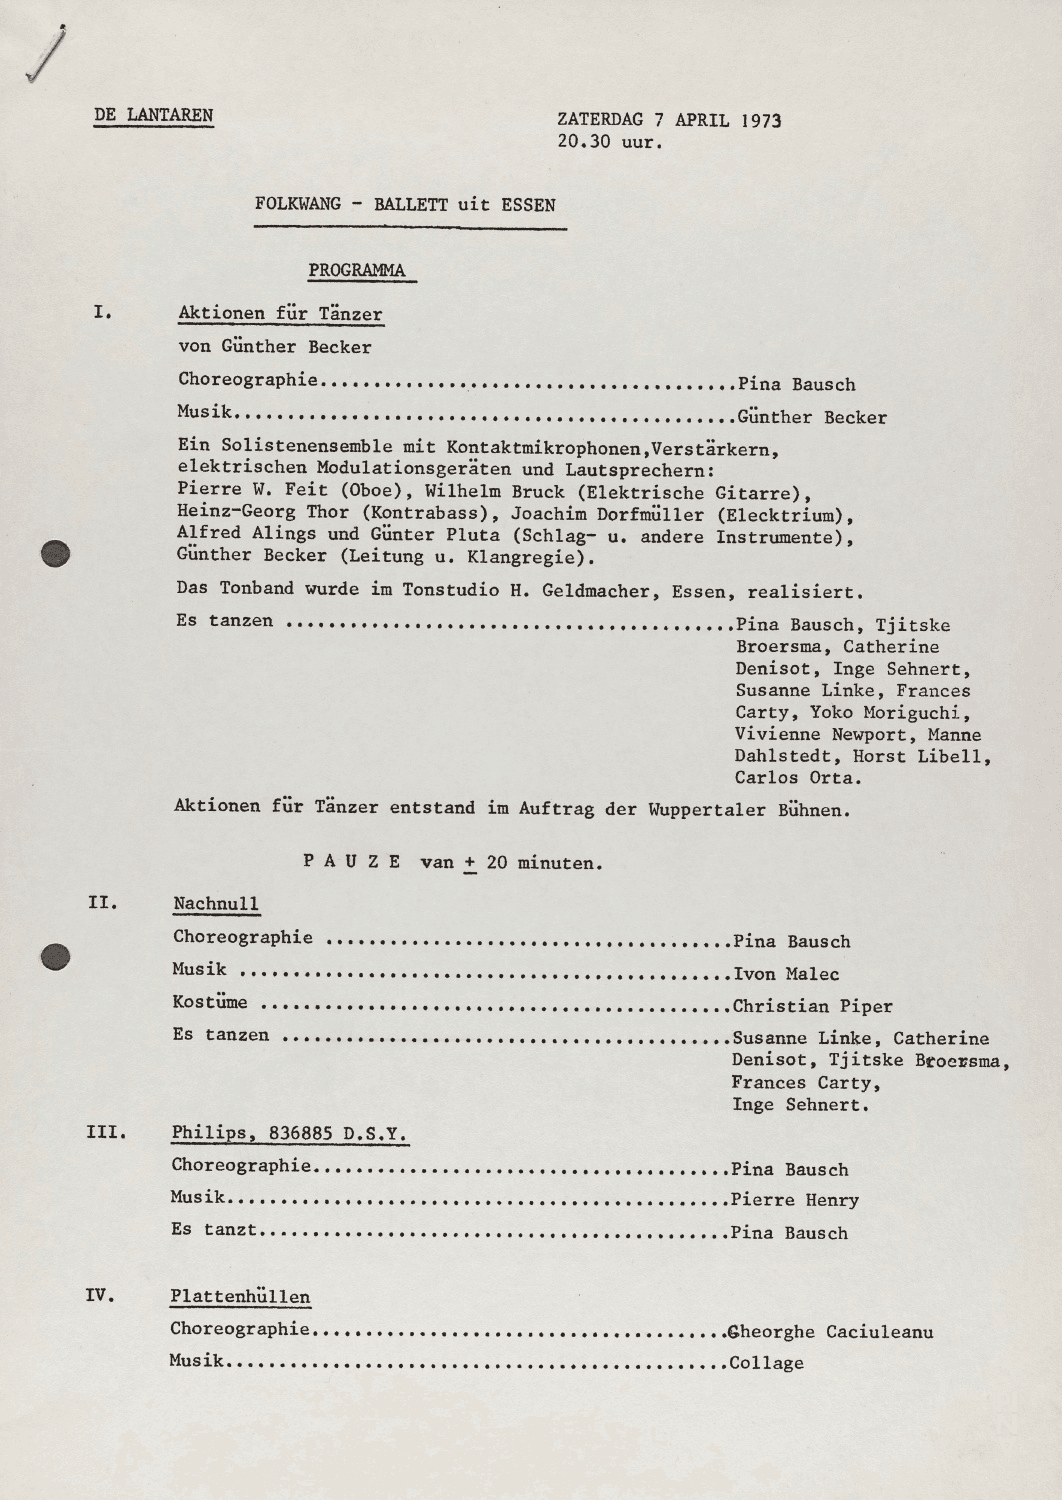 Abendzettel zu „Nachnull“, „Aktionen für Tänzer“, „PHILIPS 836 887 DSY“ und „Wiegenlied“ von Pina Bausch mit Folkwangballett in Rotterdam, 7. April 1973